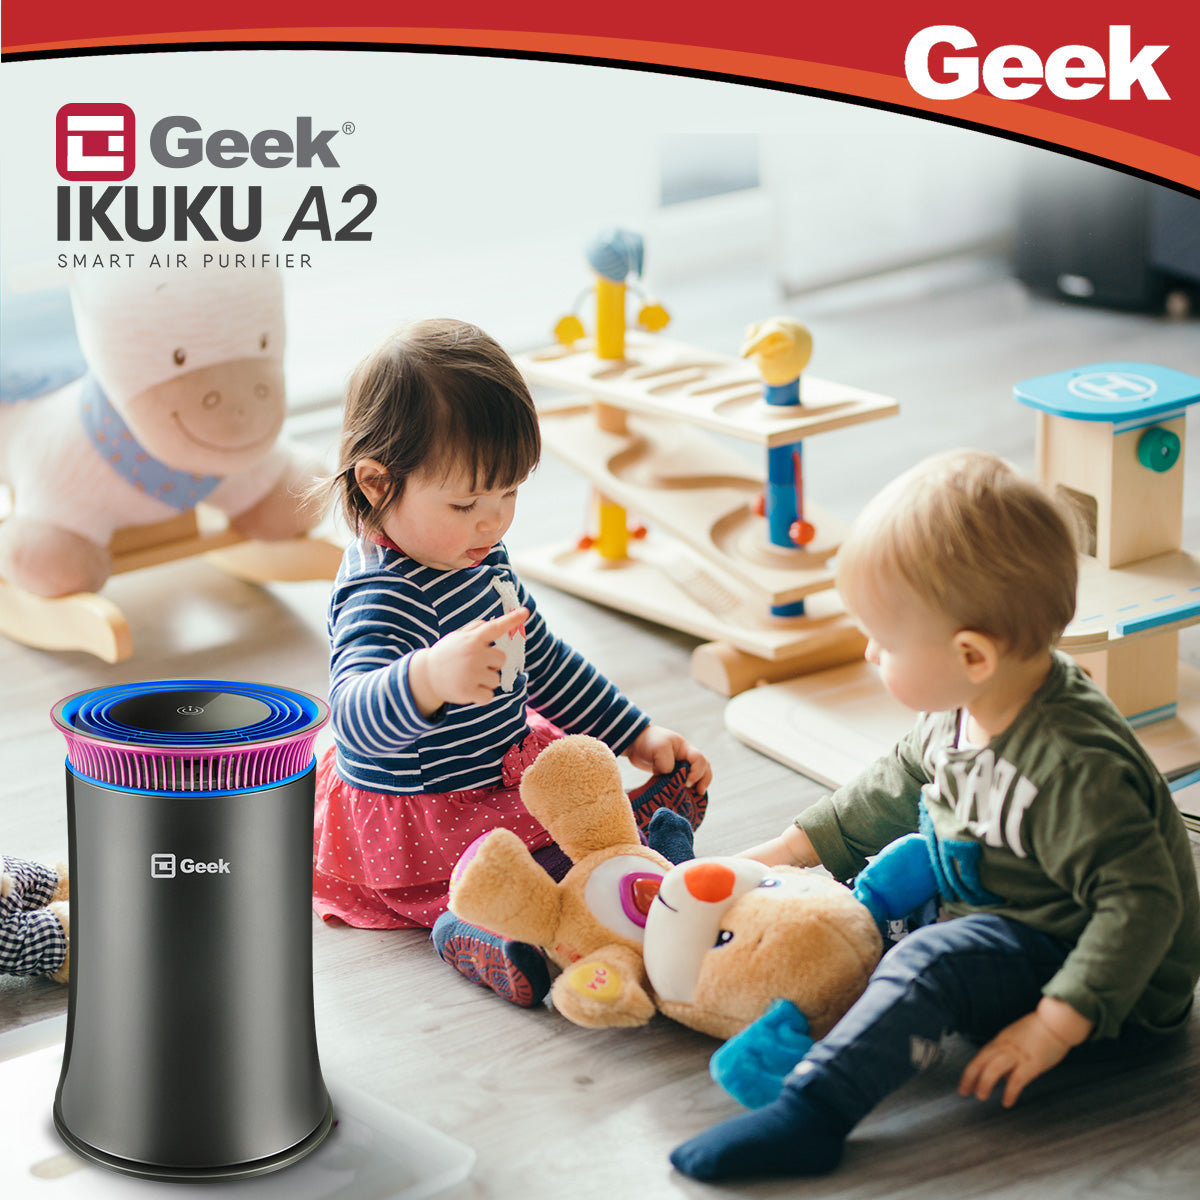 Geek Ikuku A2 - Air Purifier (Pink)